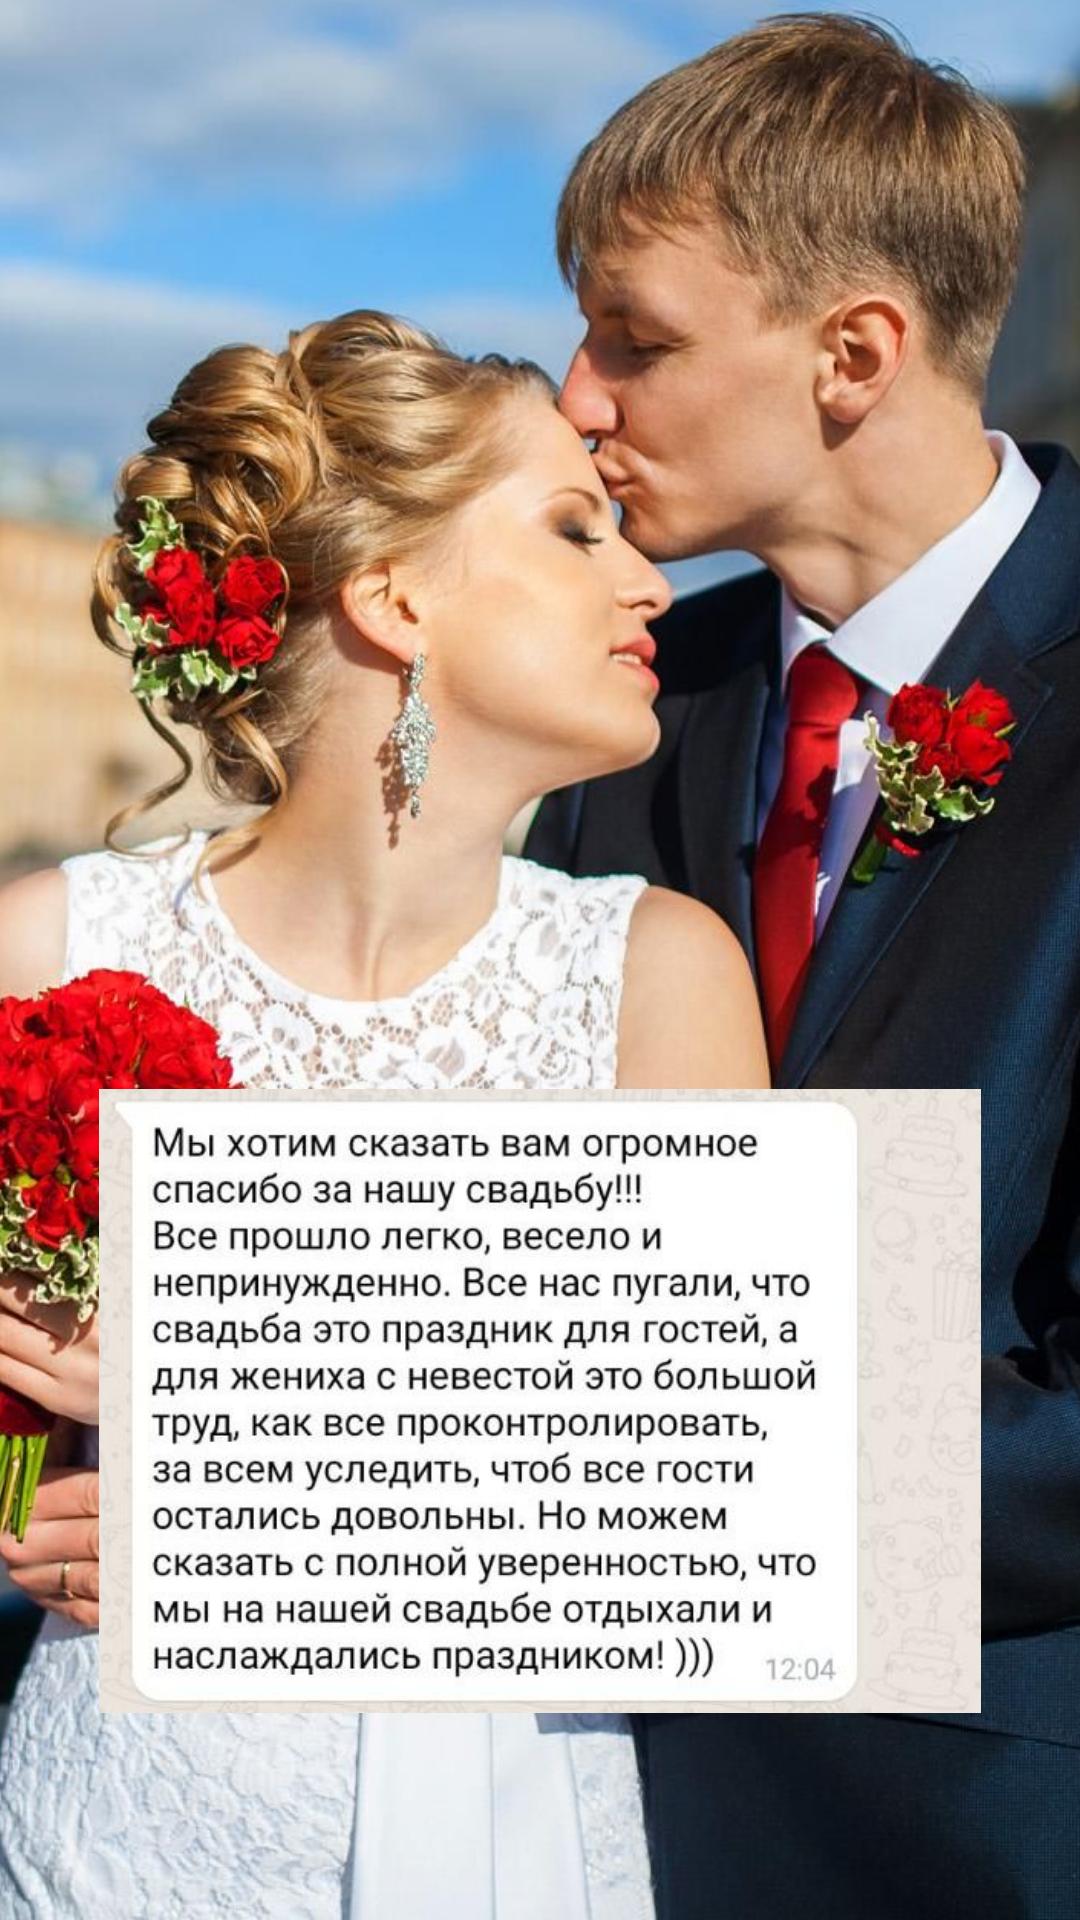 Организация свадьбы в Симферополе
от компании Pandaevent